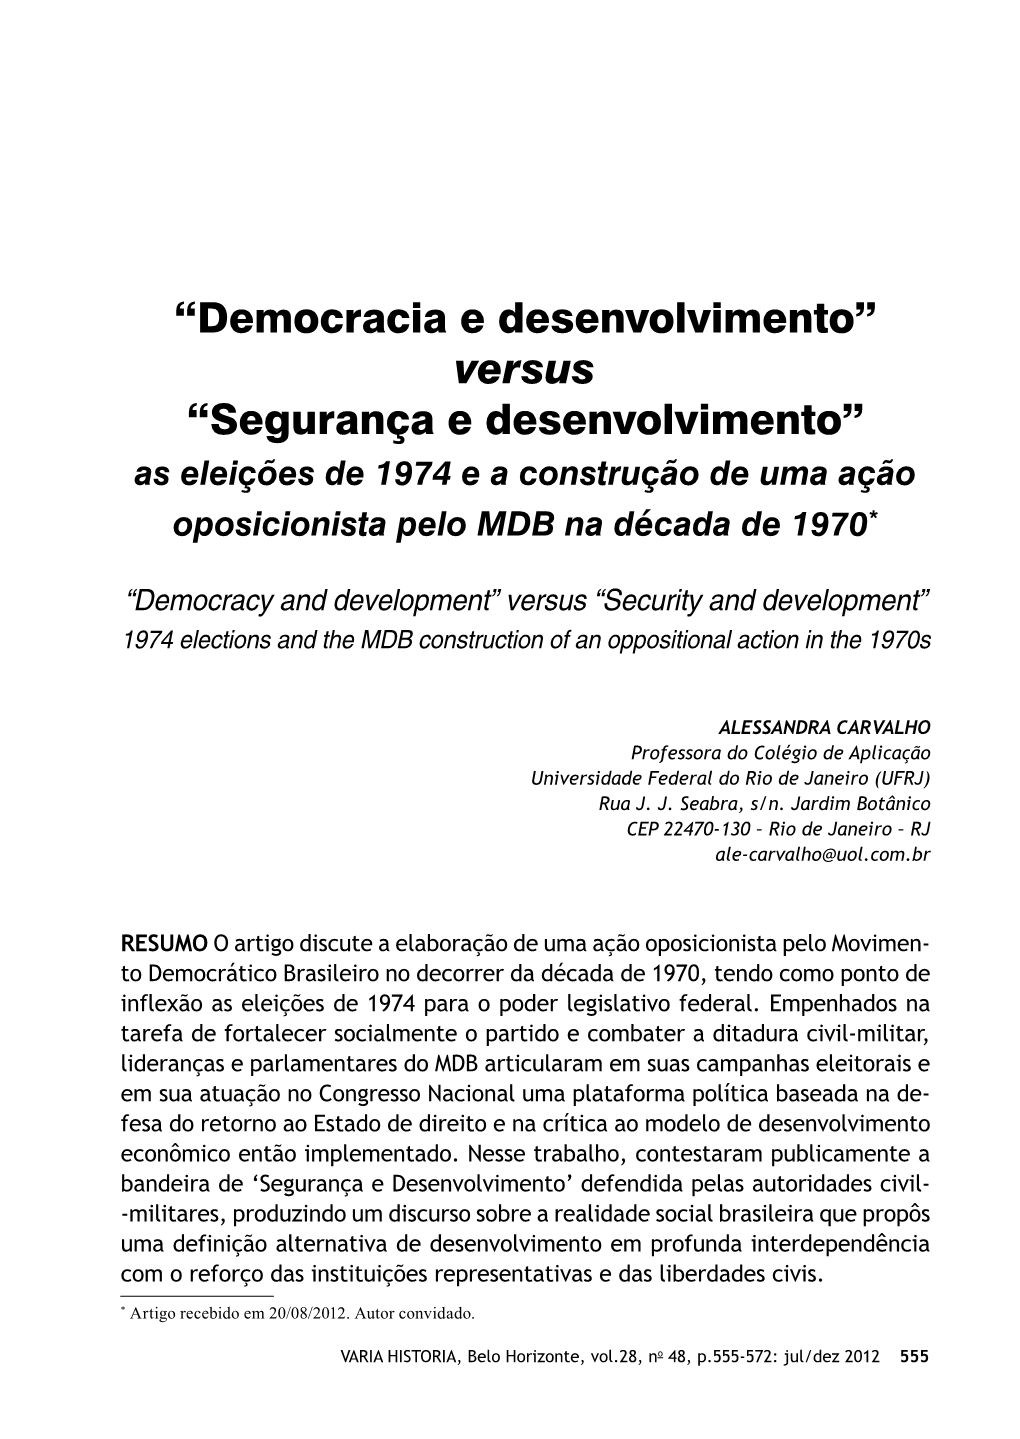 Democracia E Desenvolvimento” Versus “Segurança E Desenvolvimento” As Eleições De 1974 E a Construção De Uma Ação Oposicionista Pelo MDB Na Década De 1970*